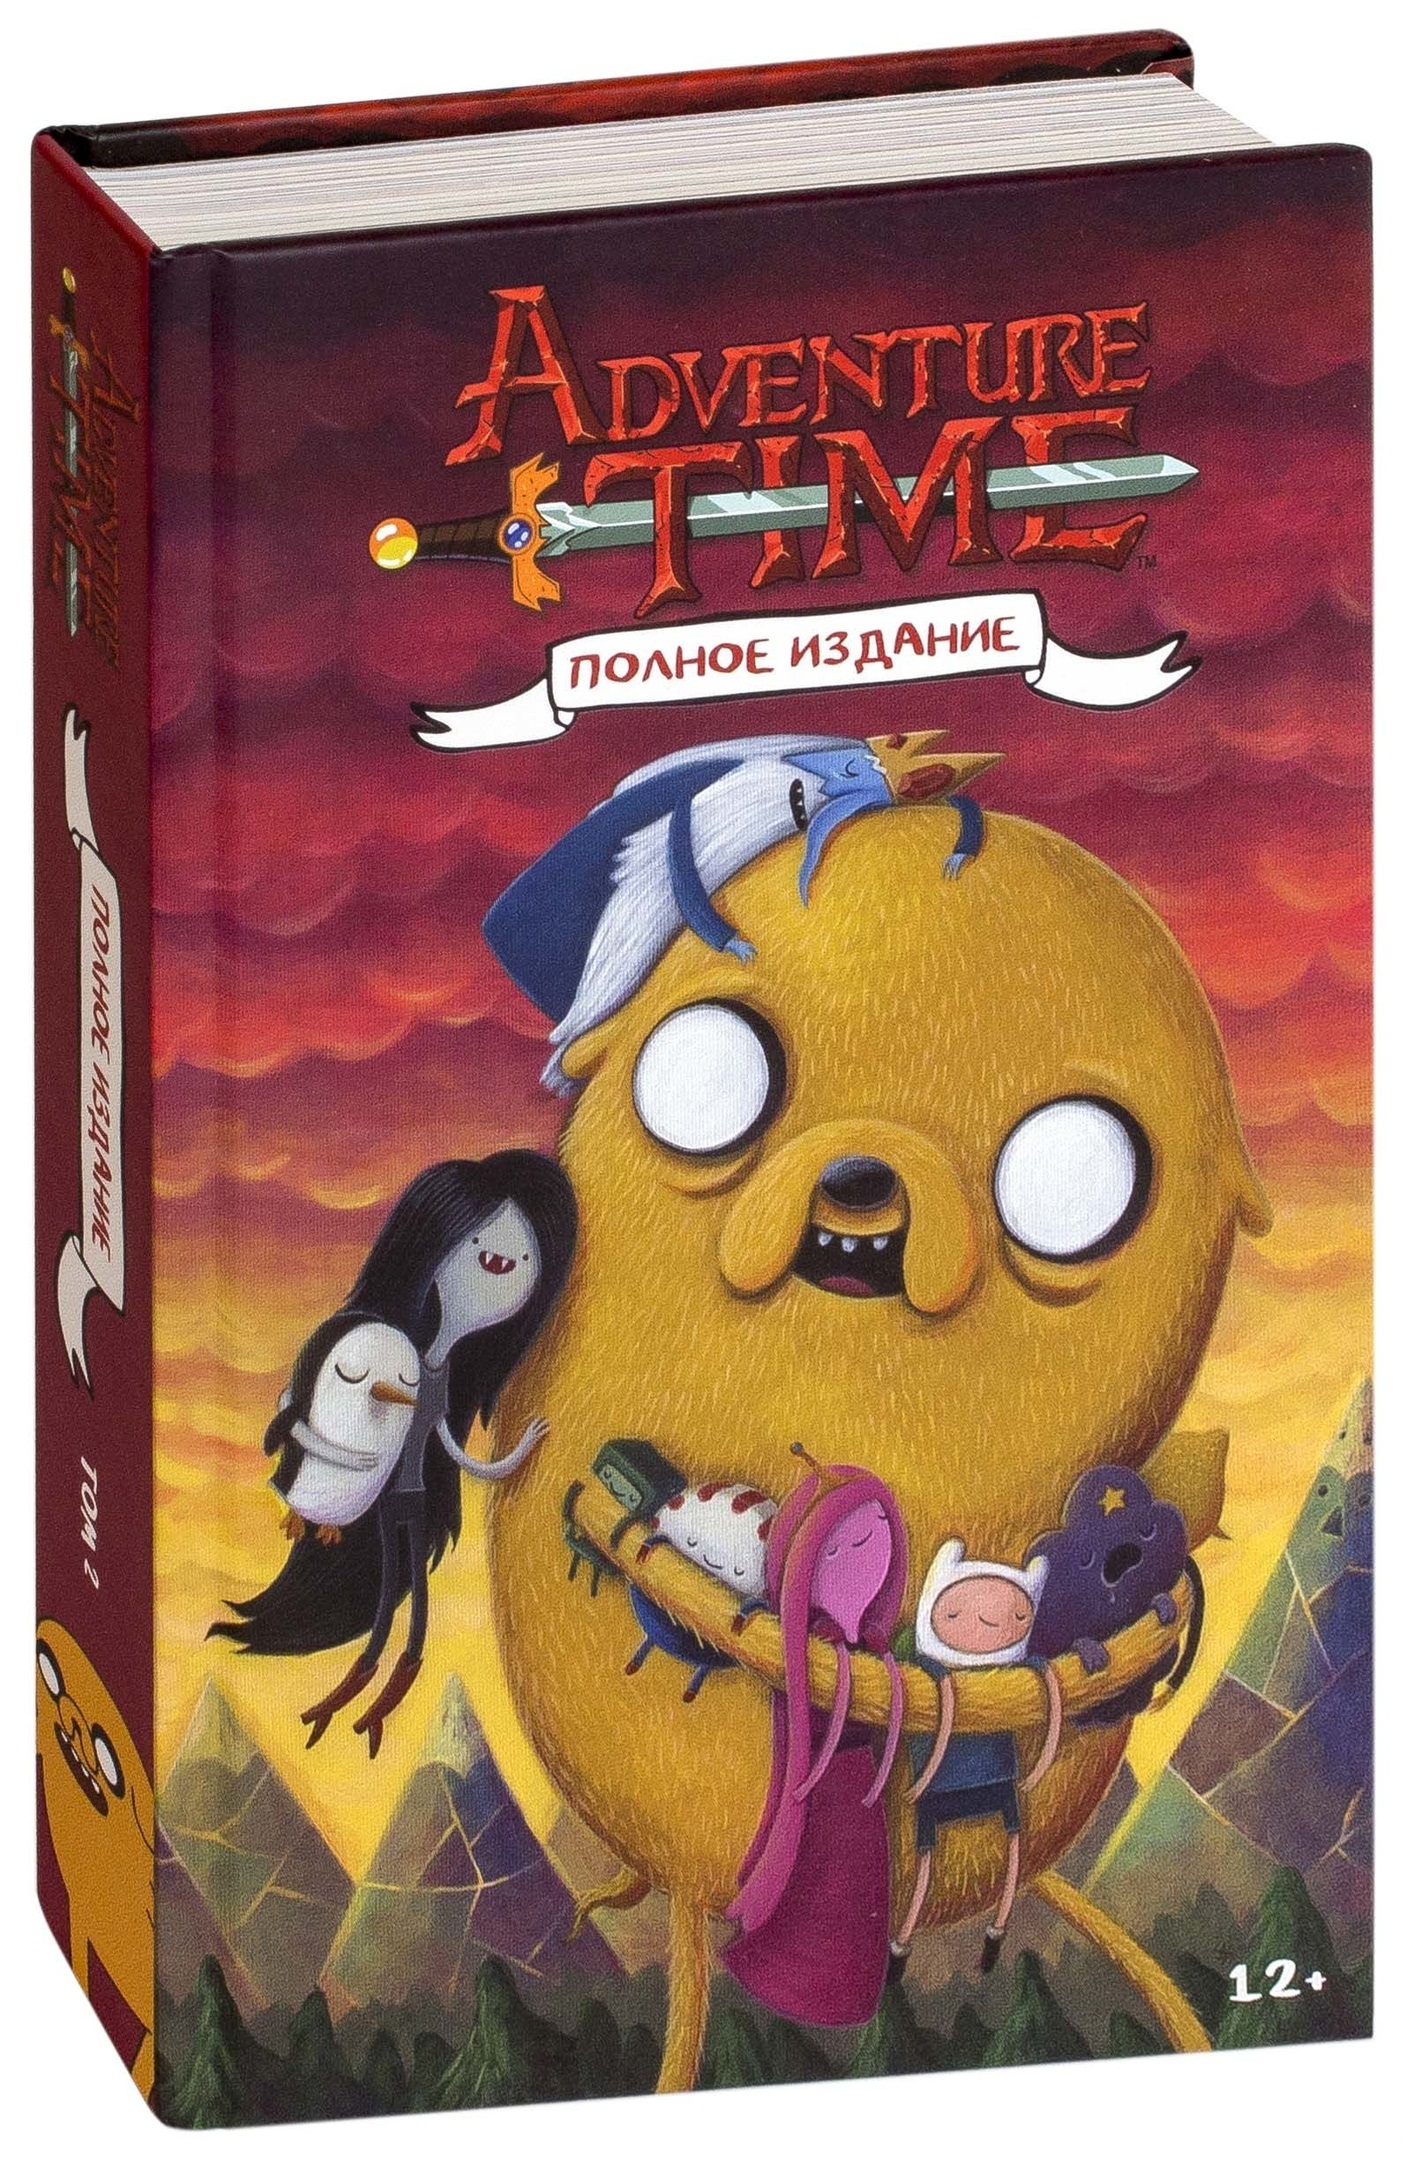 Время приключений том 1. Adventure time полное издание. Книга Adventure time полное издание. Адвентуре тайм том 2. Время приключений полное издание том 2.